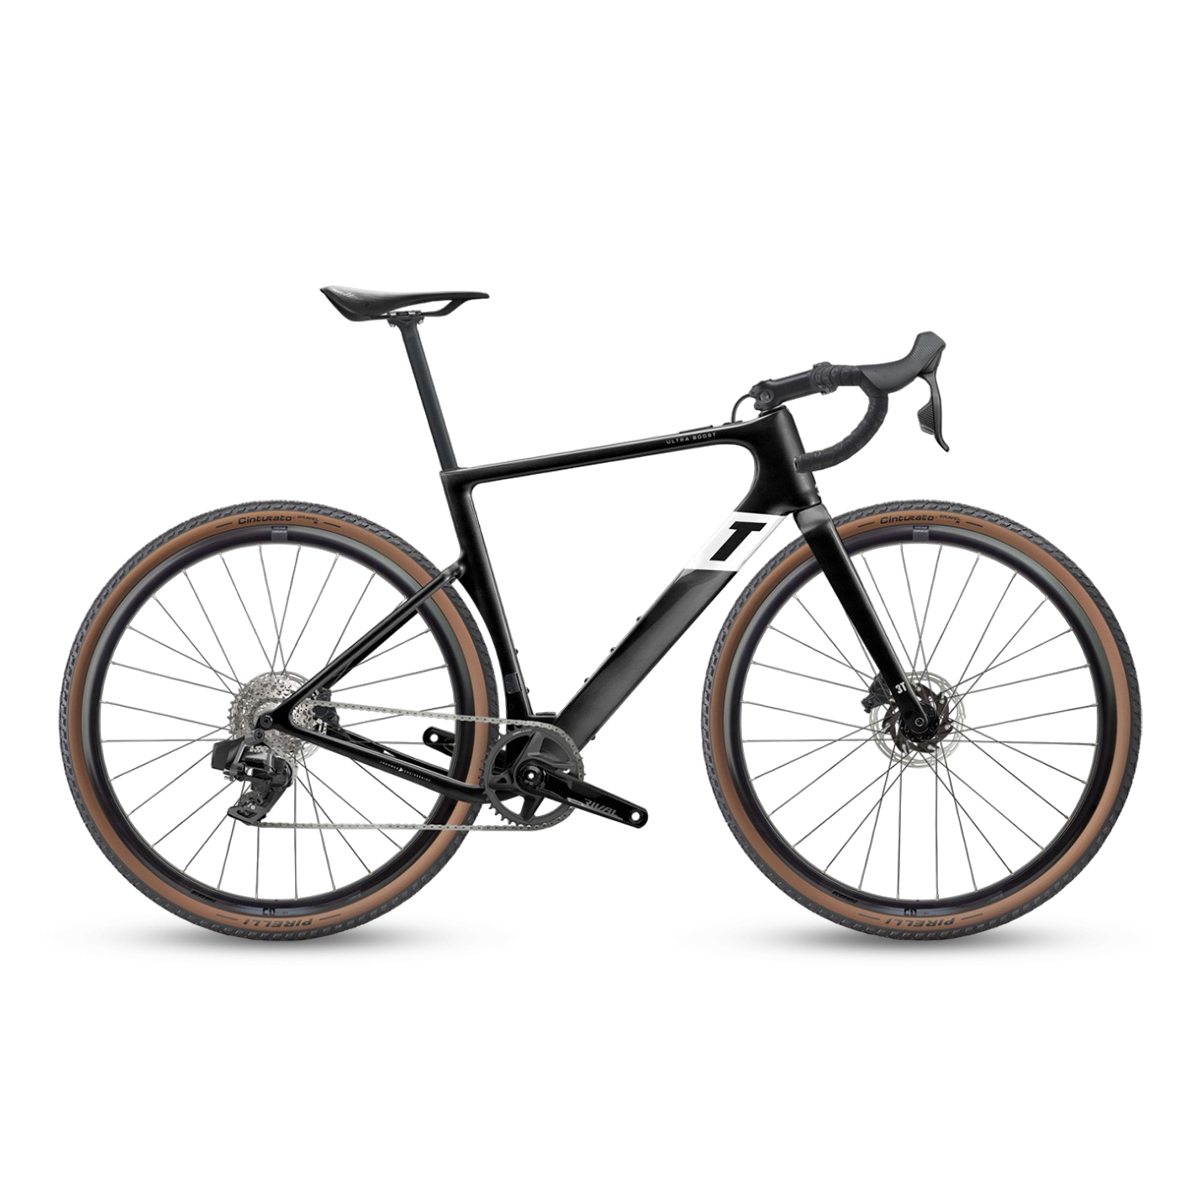 Ultra Boost 650b e-Bike - Schwarz|Weiß